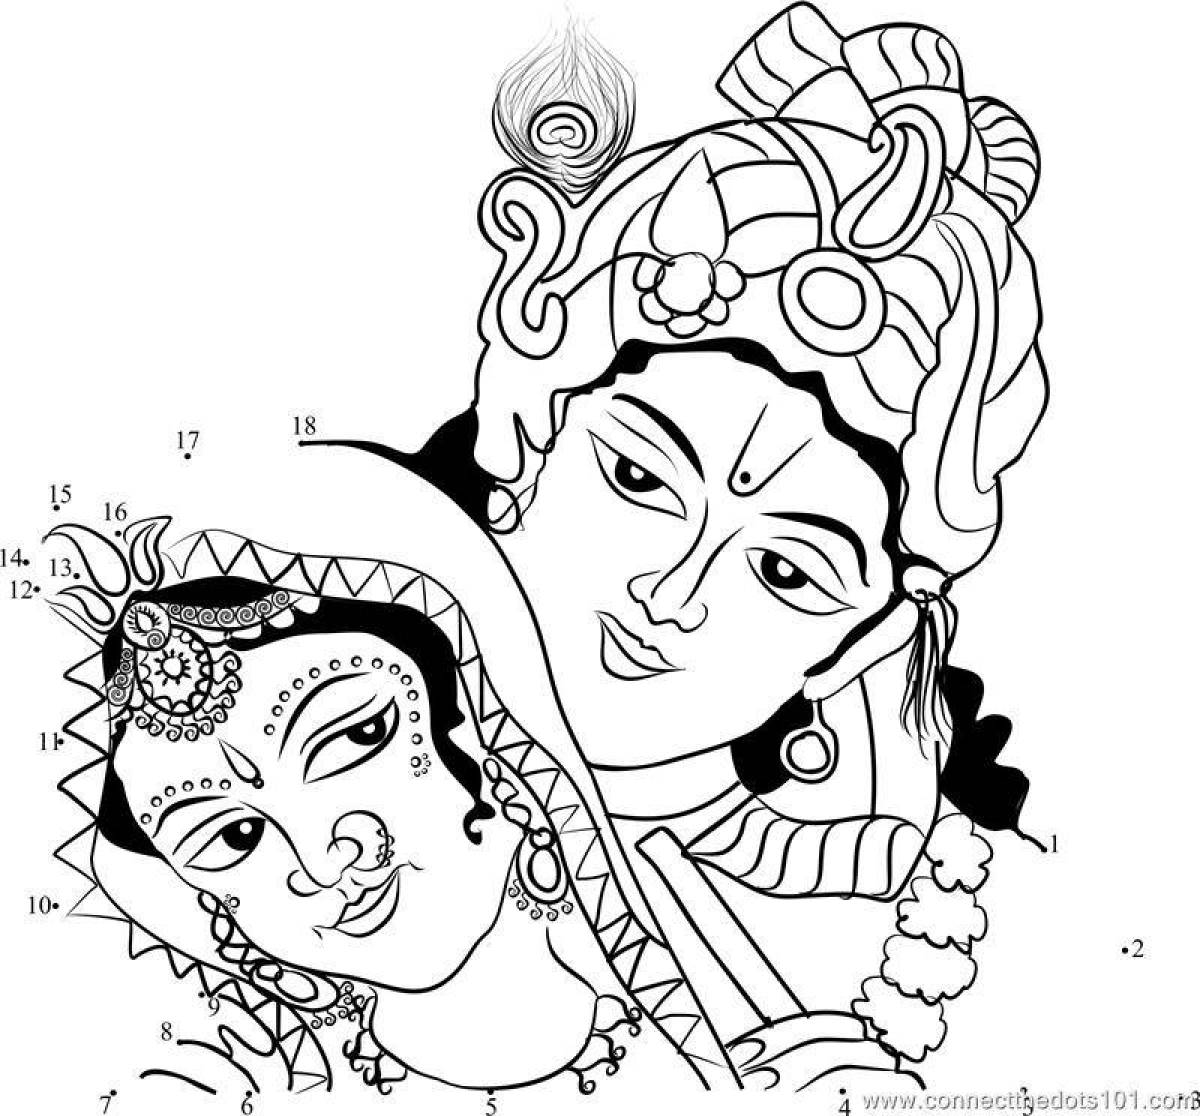 Кришна и Радха мультик